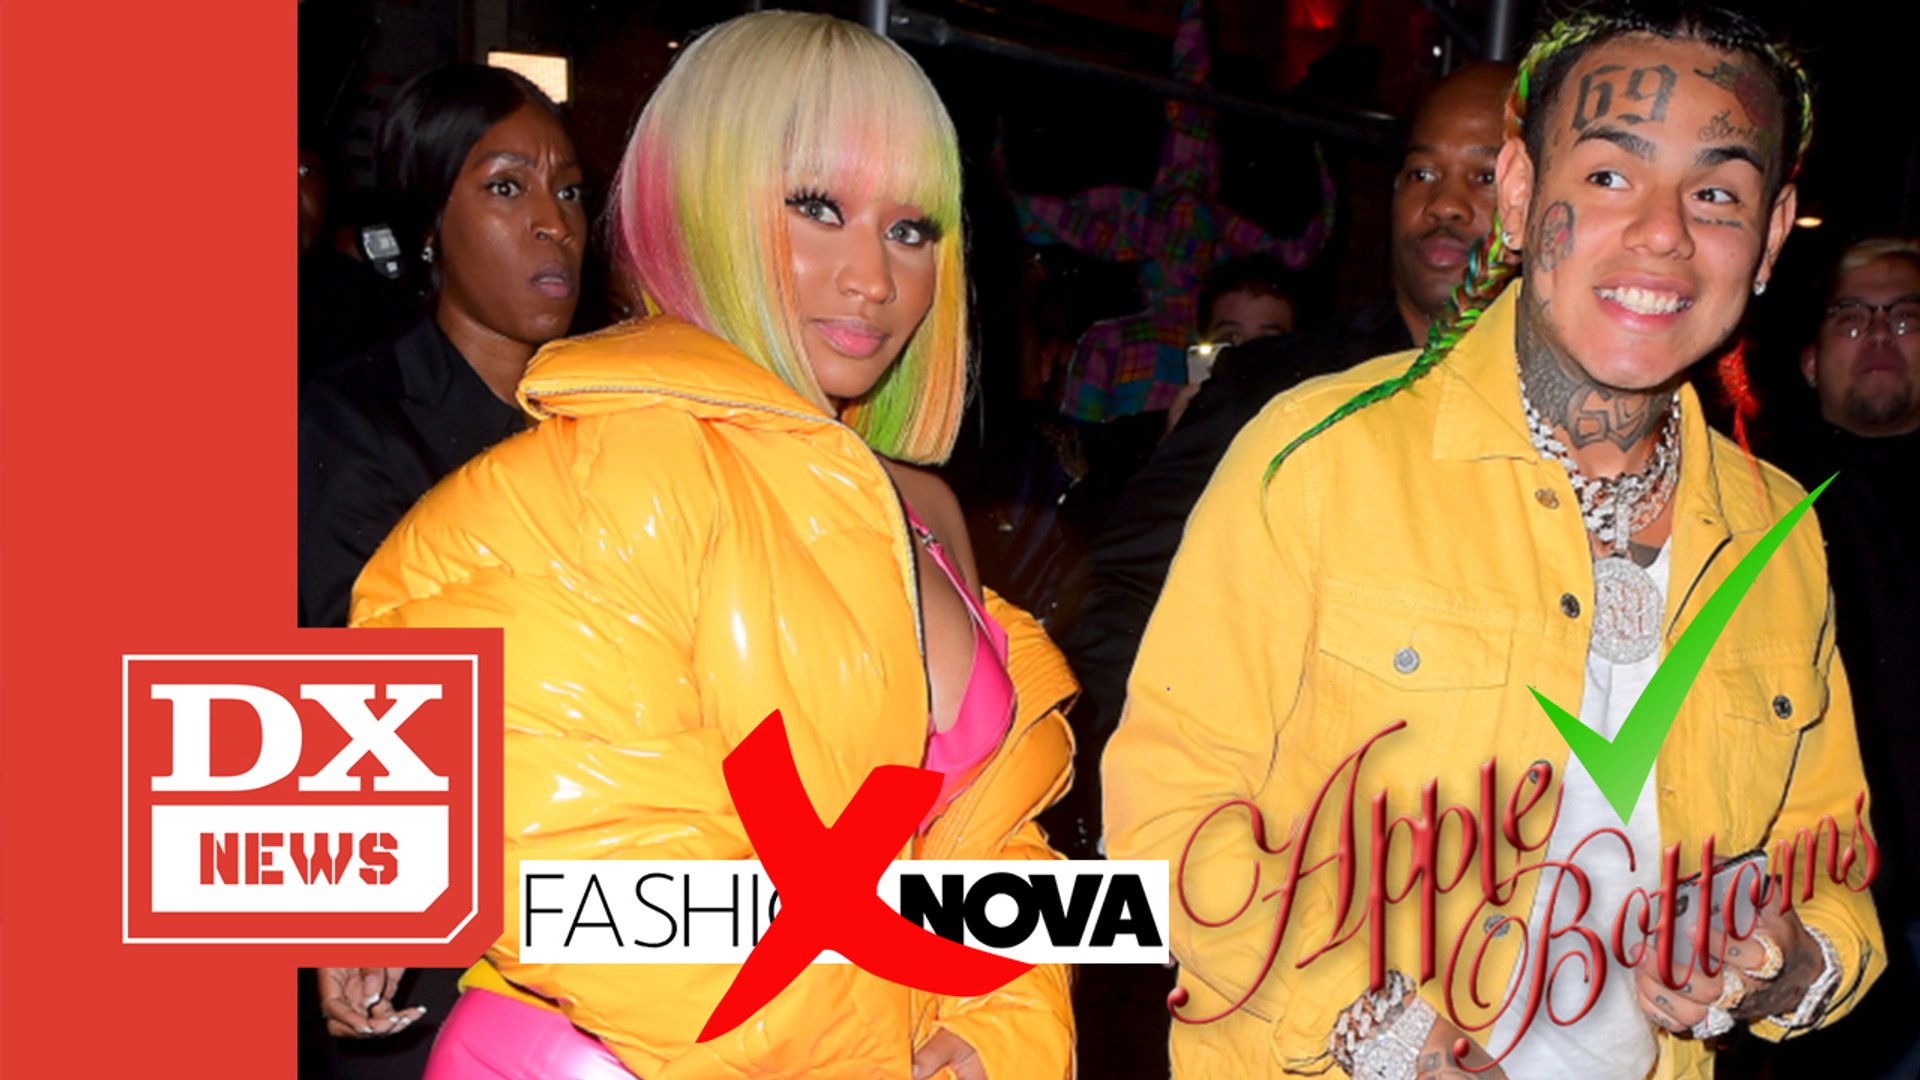 Nicki Minaj Made Tekashi 6ix9ine Change Lyrics Promoting Fashion Nova In “MAMA” Song With Kanye West